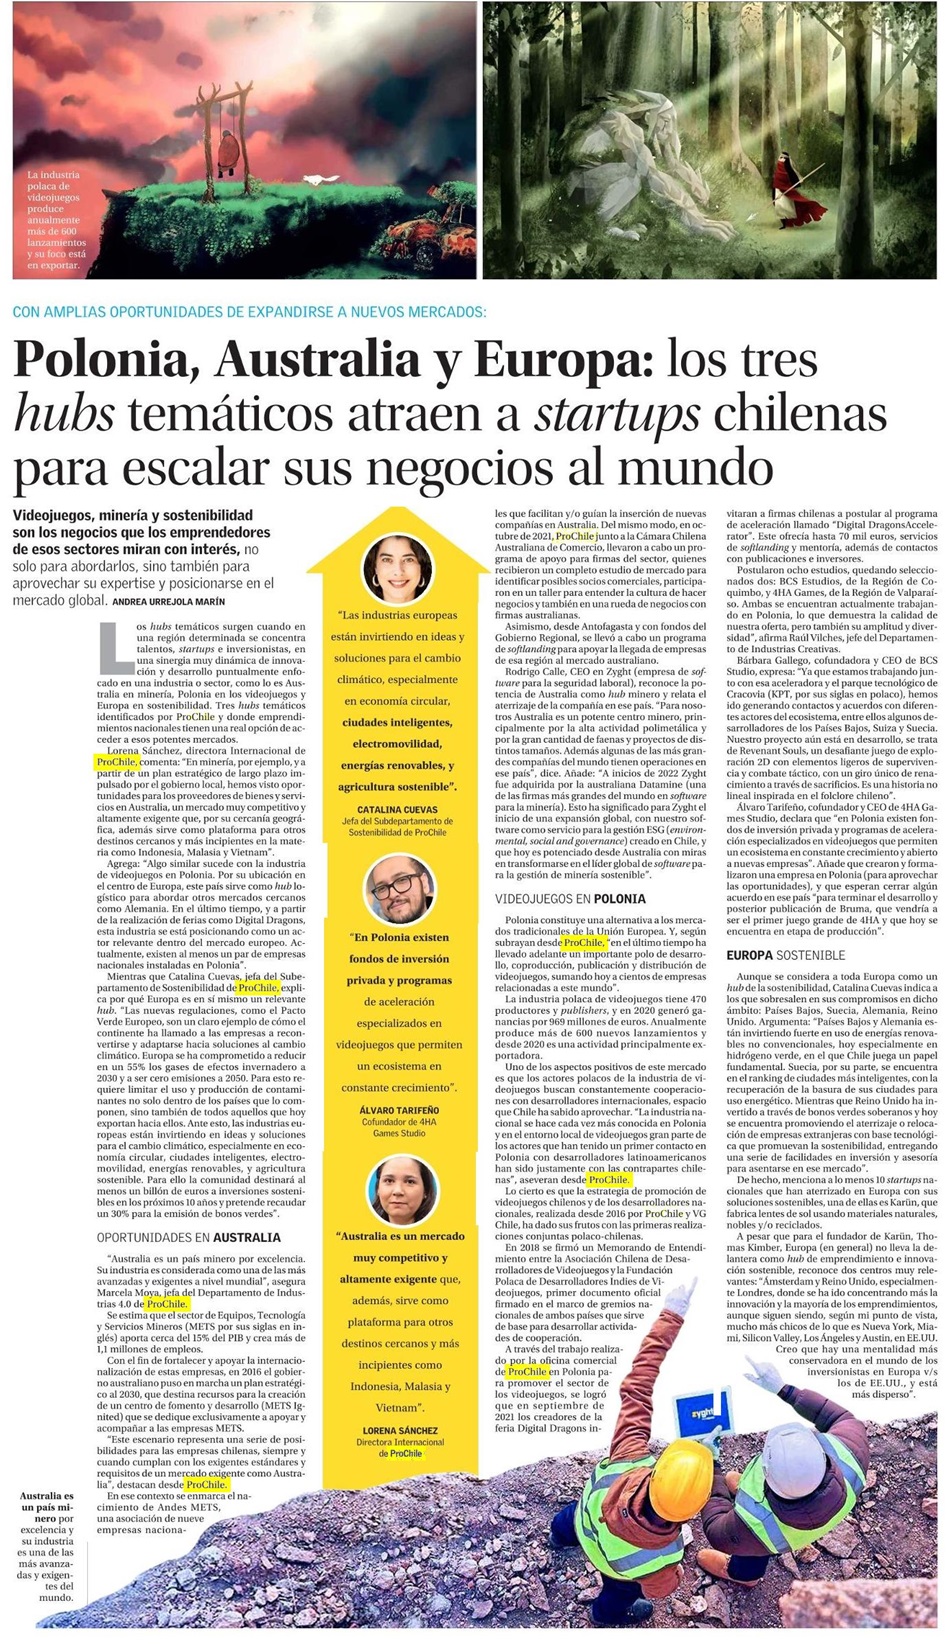 Destacado en prensa: "Polonia, Australia y Europa: los tres hubs temáticos atraen a startups chilenas para escalar sus negocios al mundo"